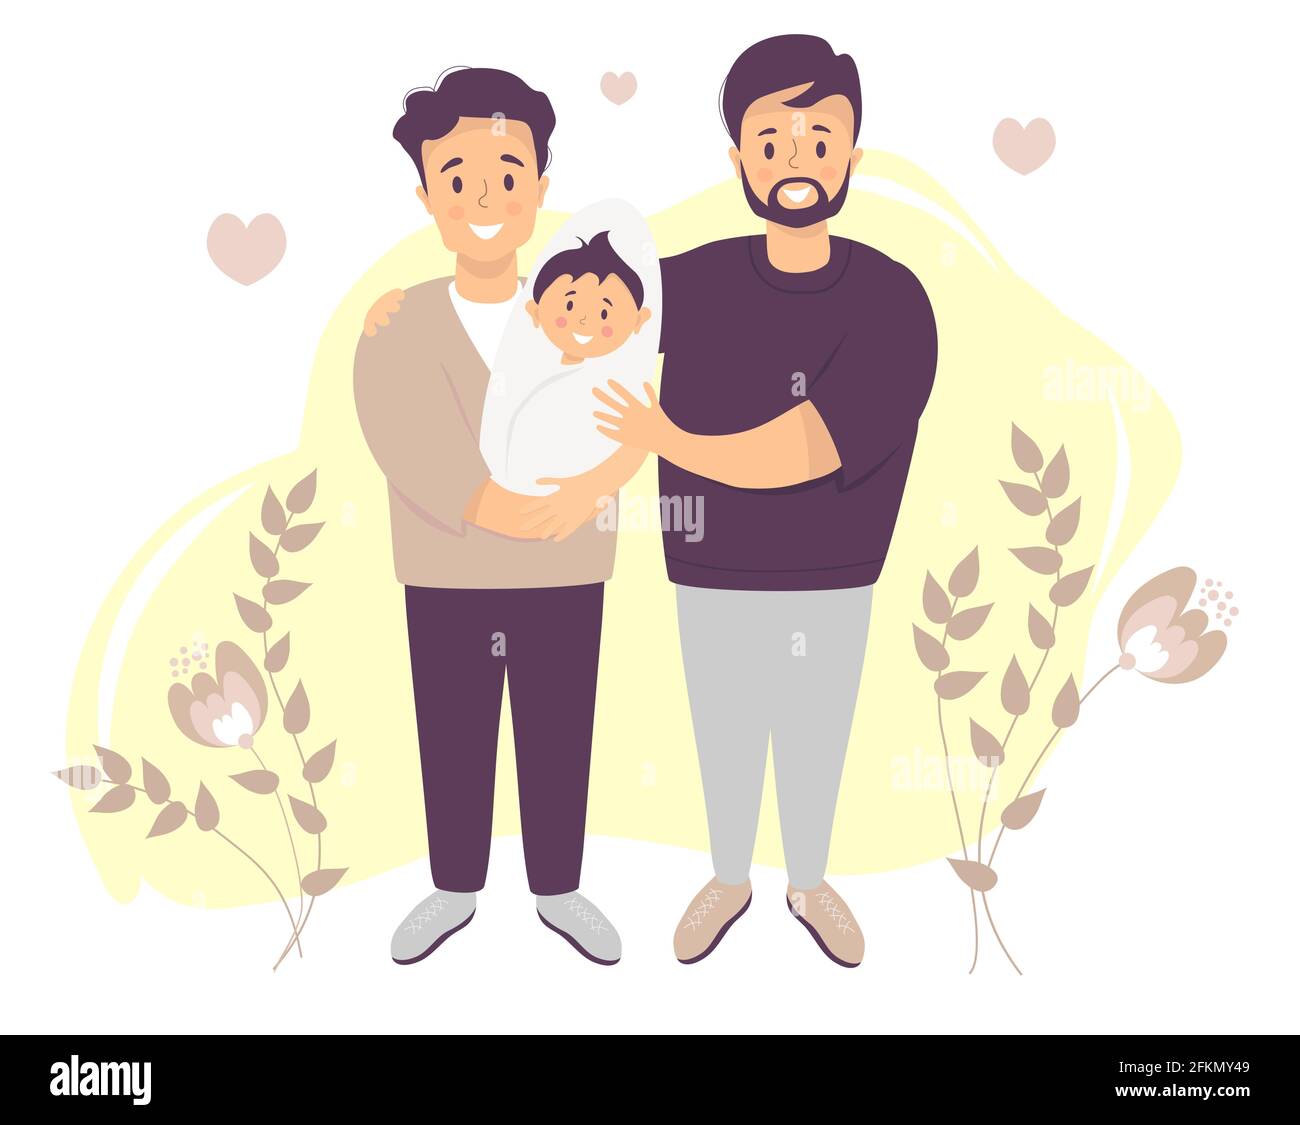 Pareja gay de sexo masculino que adopta a un bebé. Dos hombres felices sosteniendo a un nuevo hijo. Ilustración vectorial imagen